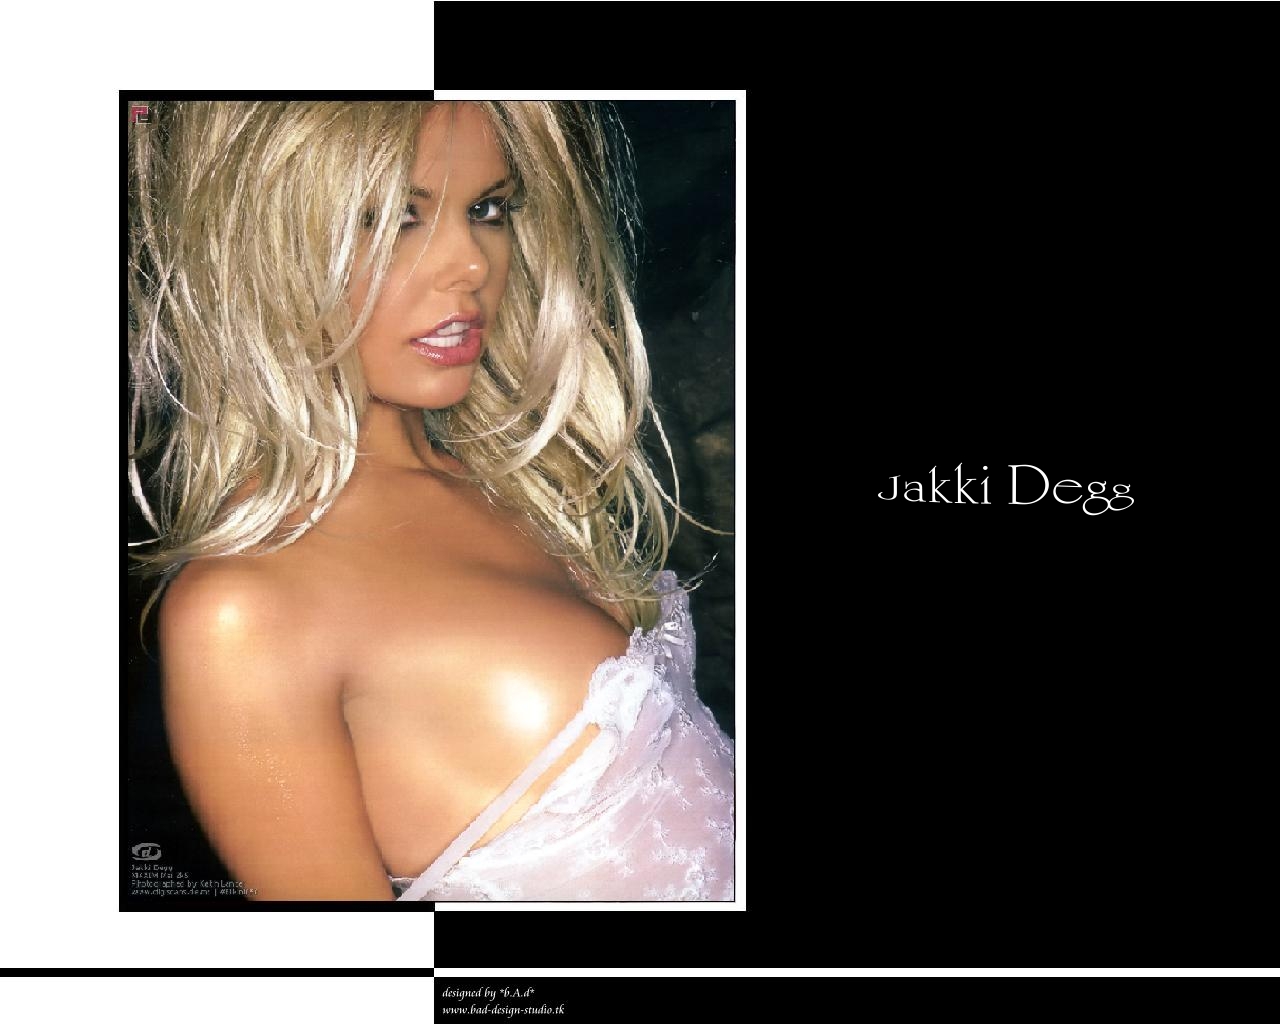 Download full size Jakki Degg wallpaper / Celebrities Female / 1280x1024